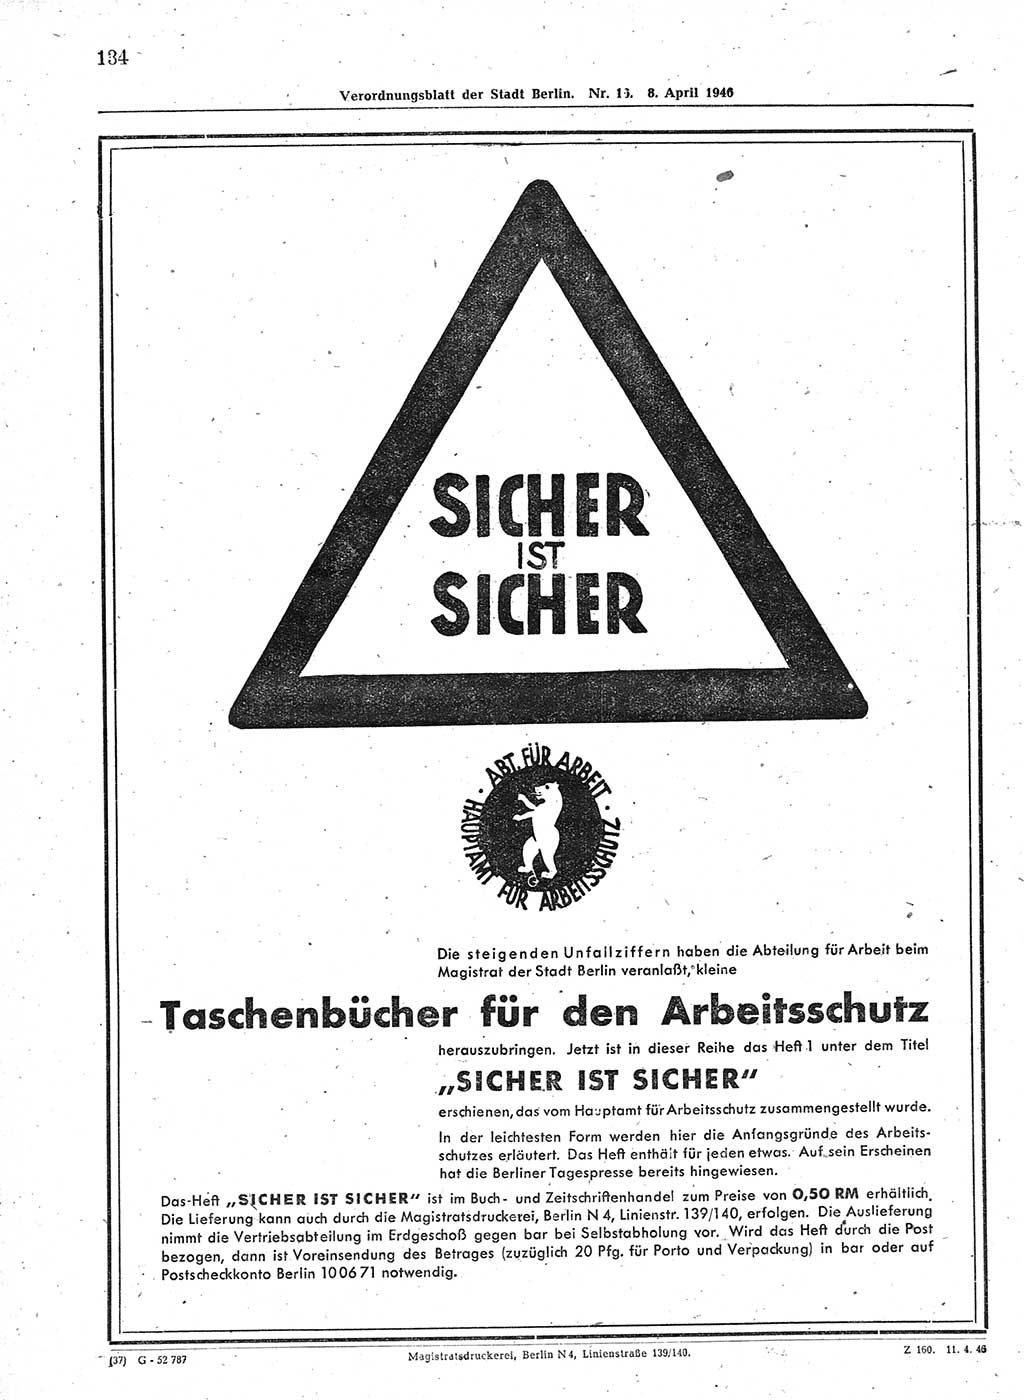 Verordnungsblatt (VOBl.) der Stadt Berlin, für Groß-Berlin 1946, Seite 134 (VOBl. Bln. 1946, S. 134)